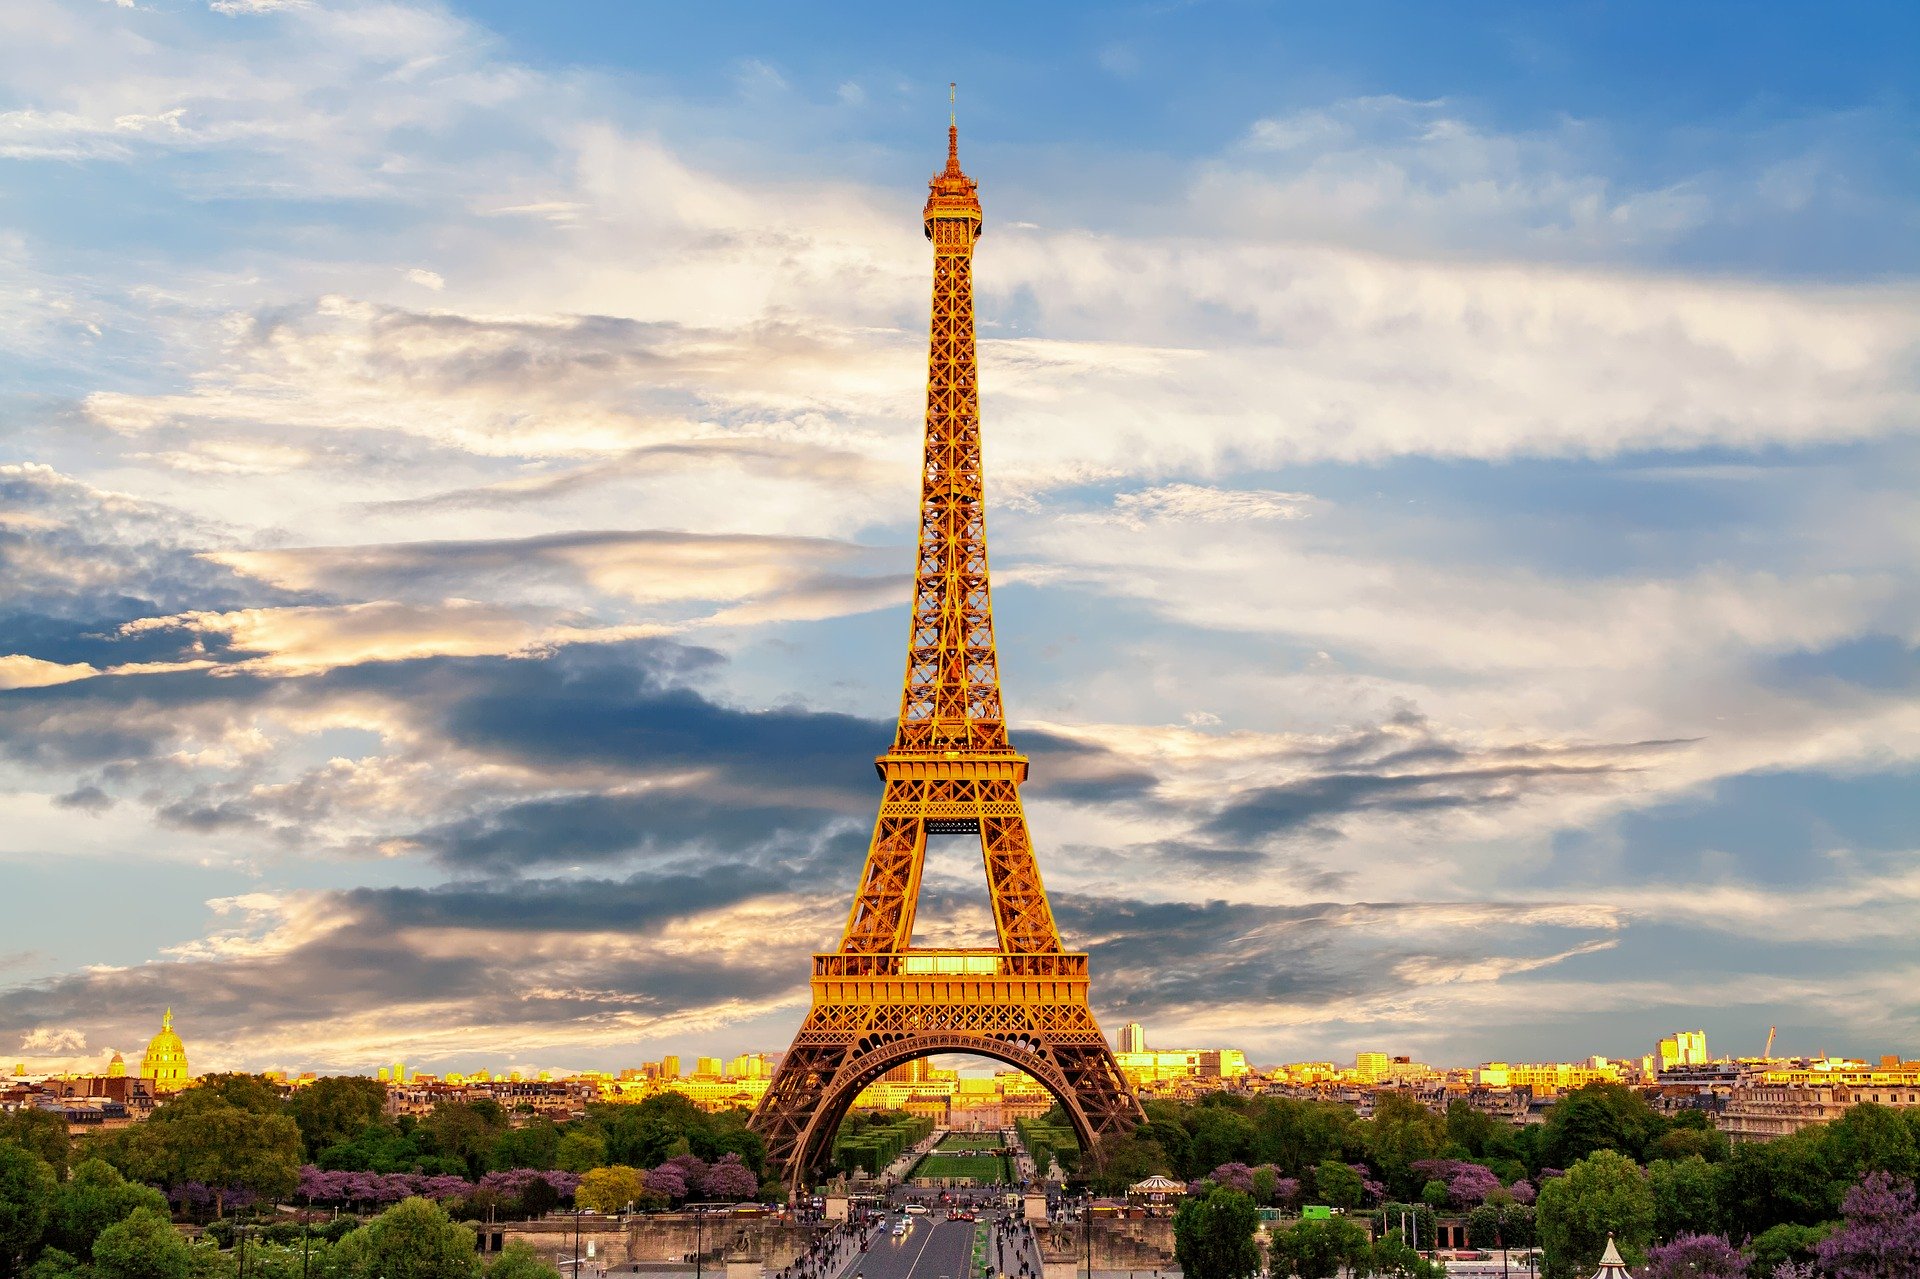 كل المعلومات التي تحتاج إليها قبل زيارة برج إيفل في باريس ترافيل ديف Traveldiv